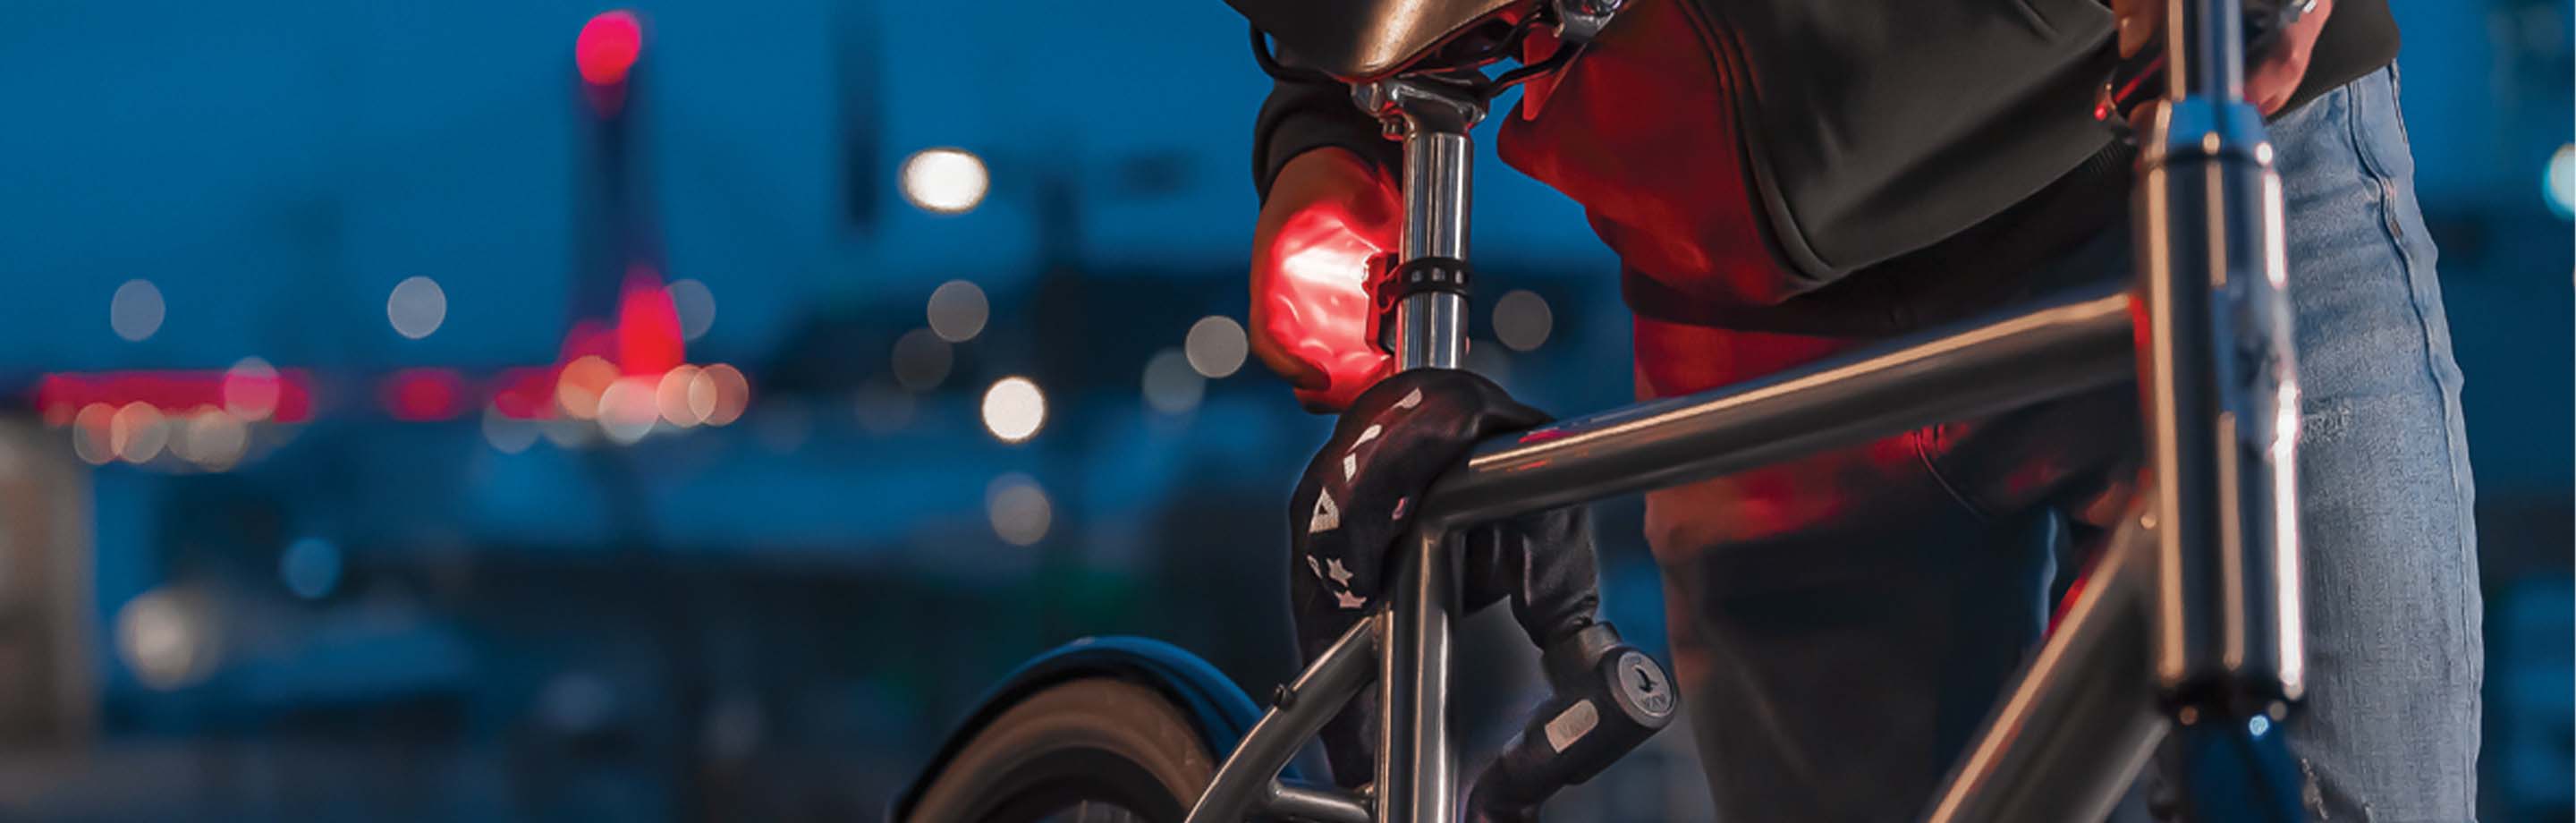 AXA fietsverlichting brengt licht in de duisternis